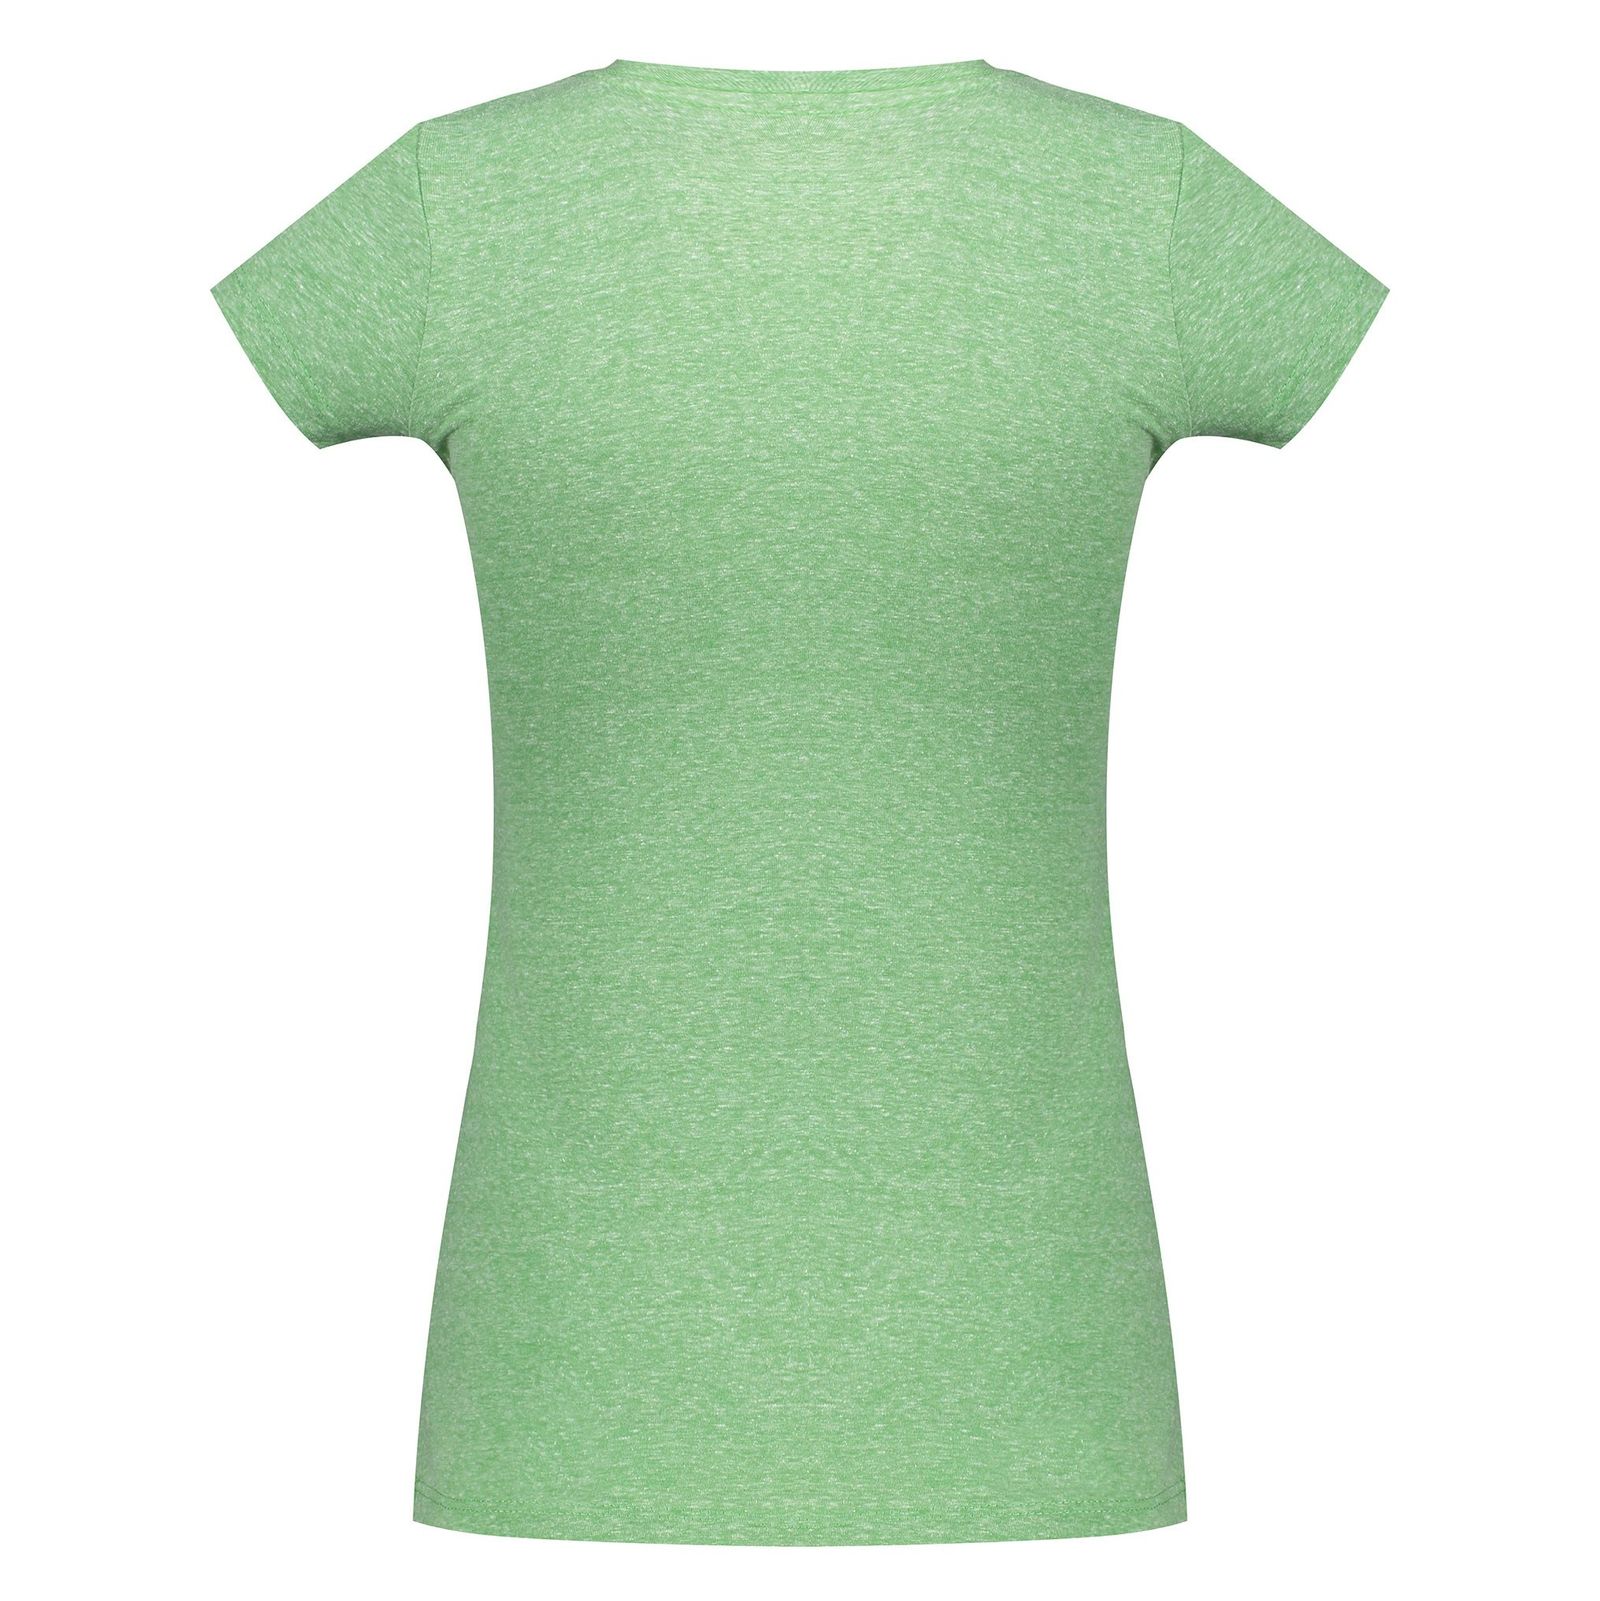 تی شرت یقه گرد زنانه - متی - سبز - 3